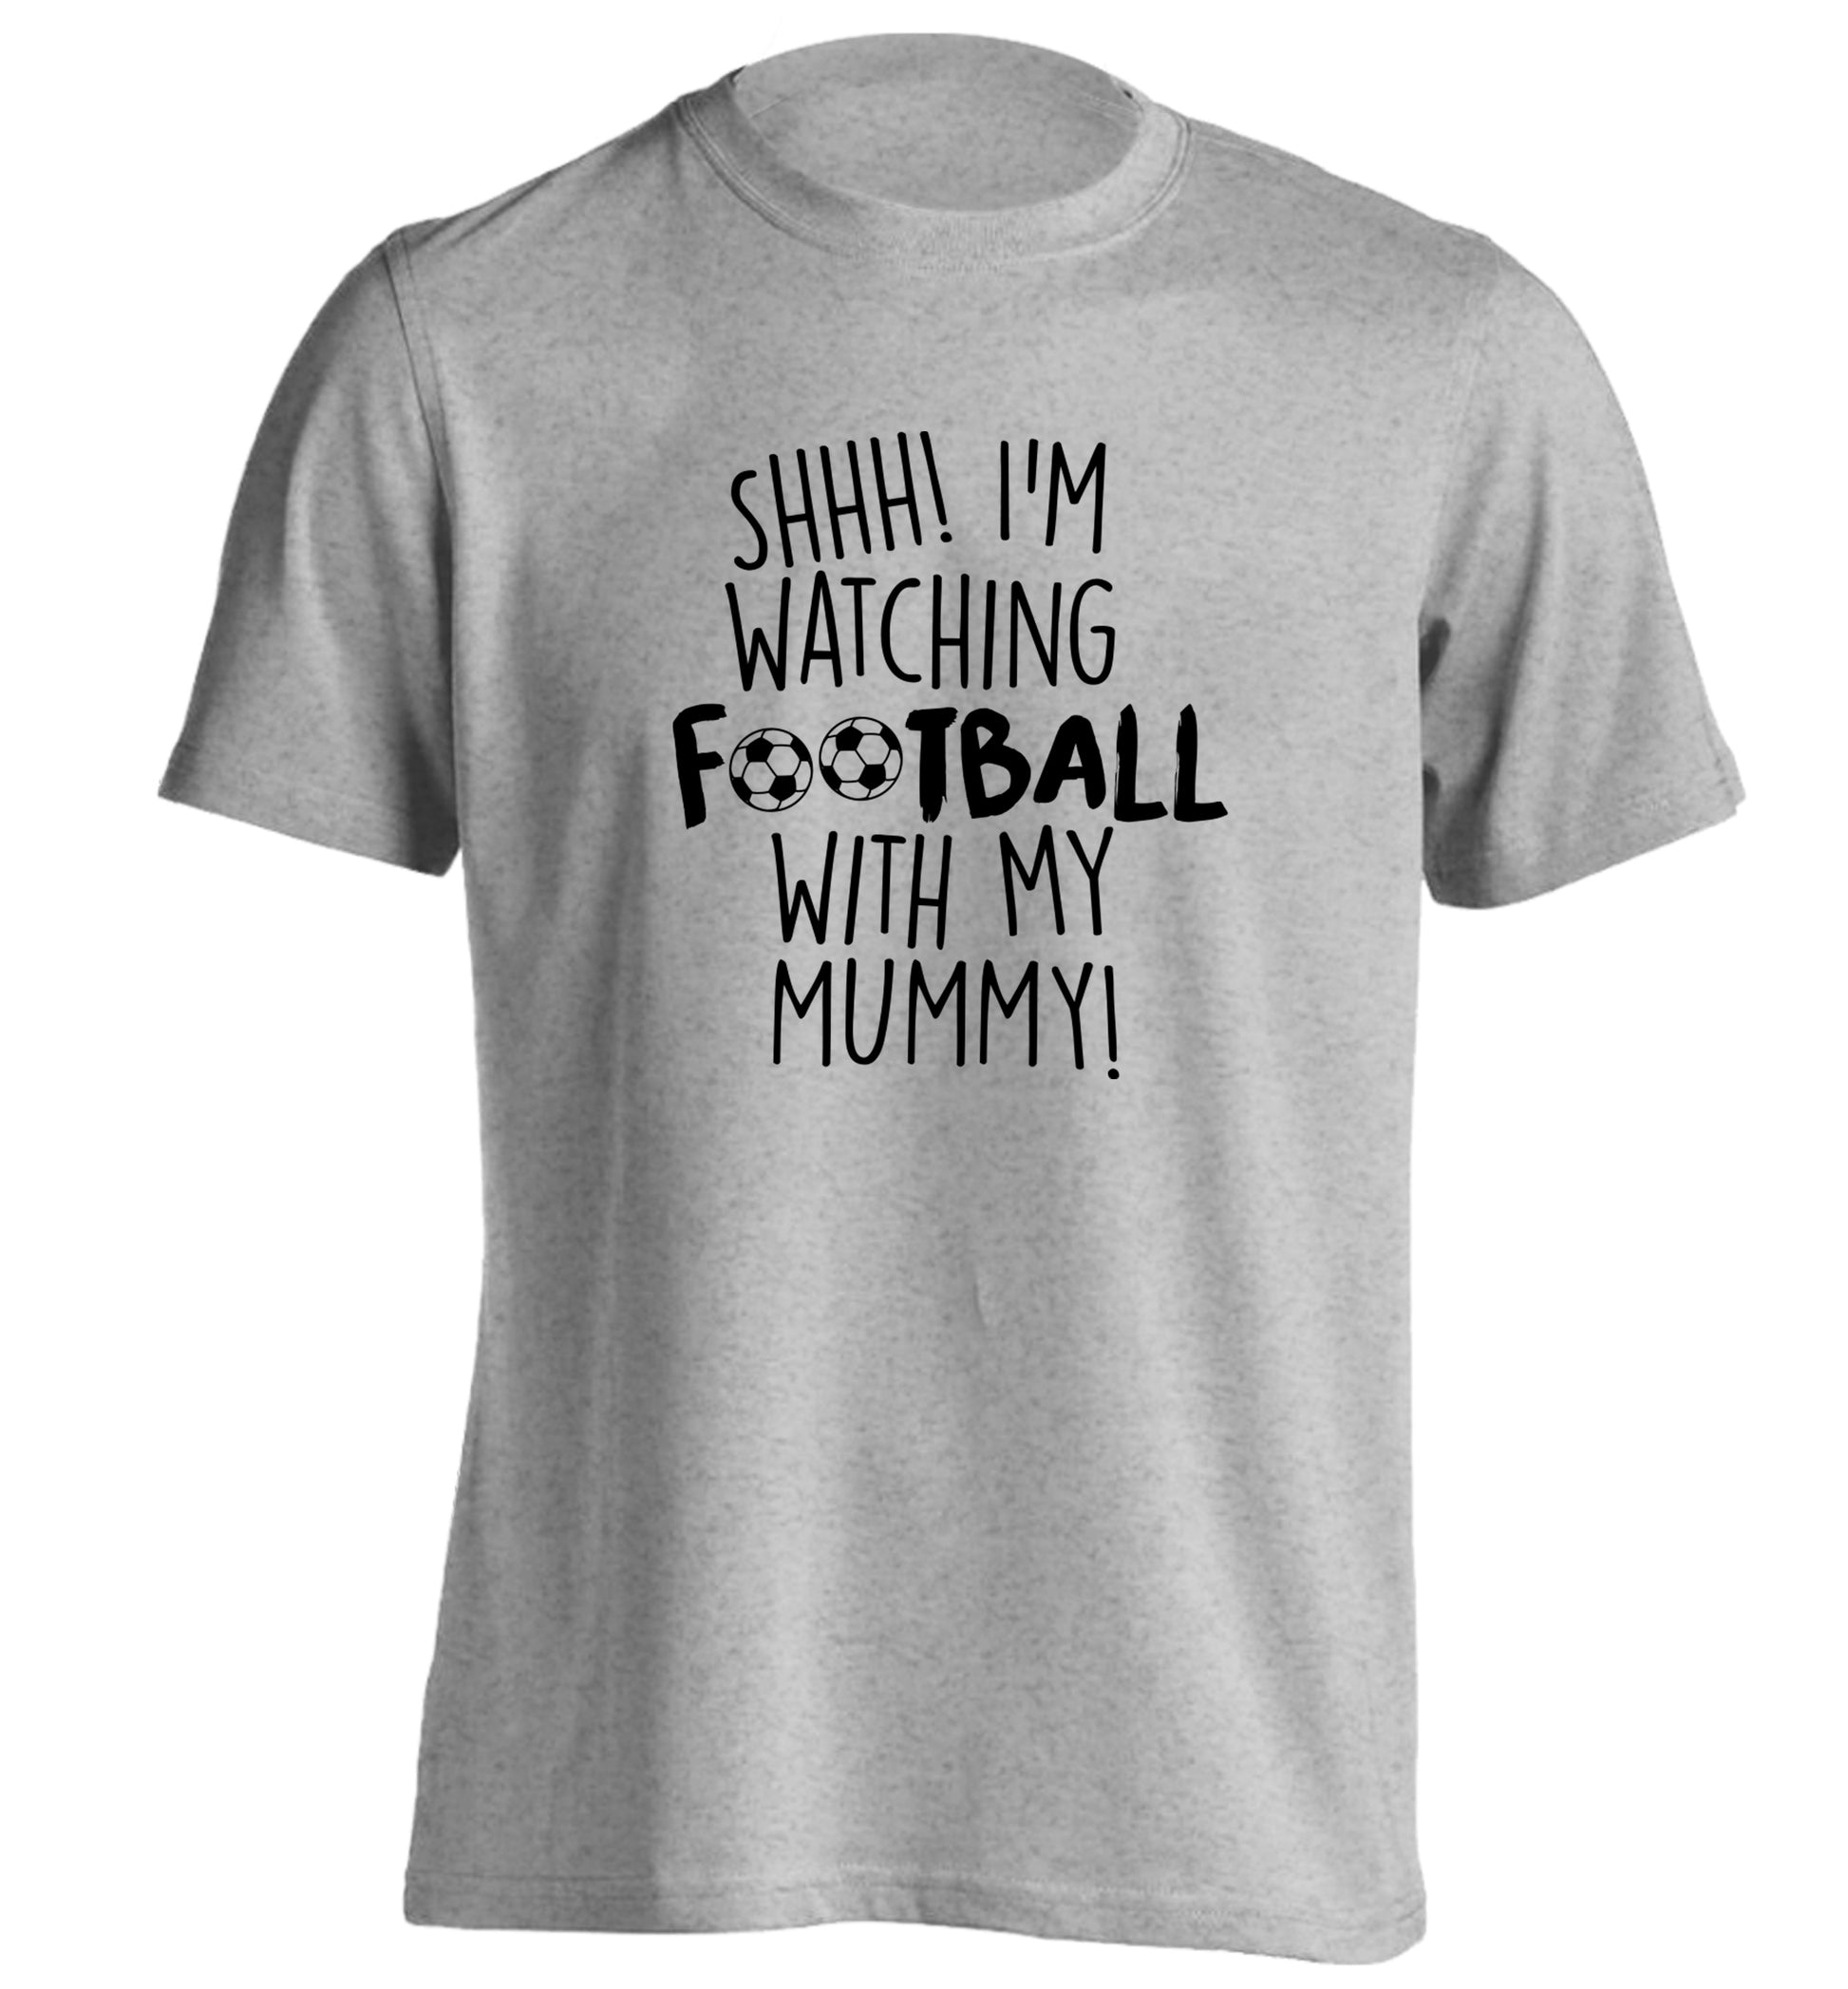 Shhh I'm watching football with my mummy adults unisexgrey Tshirt 2XL